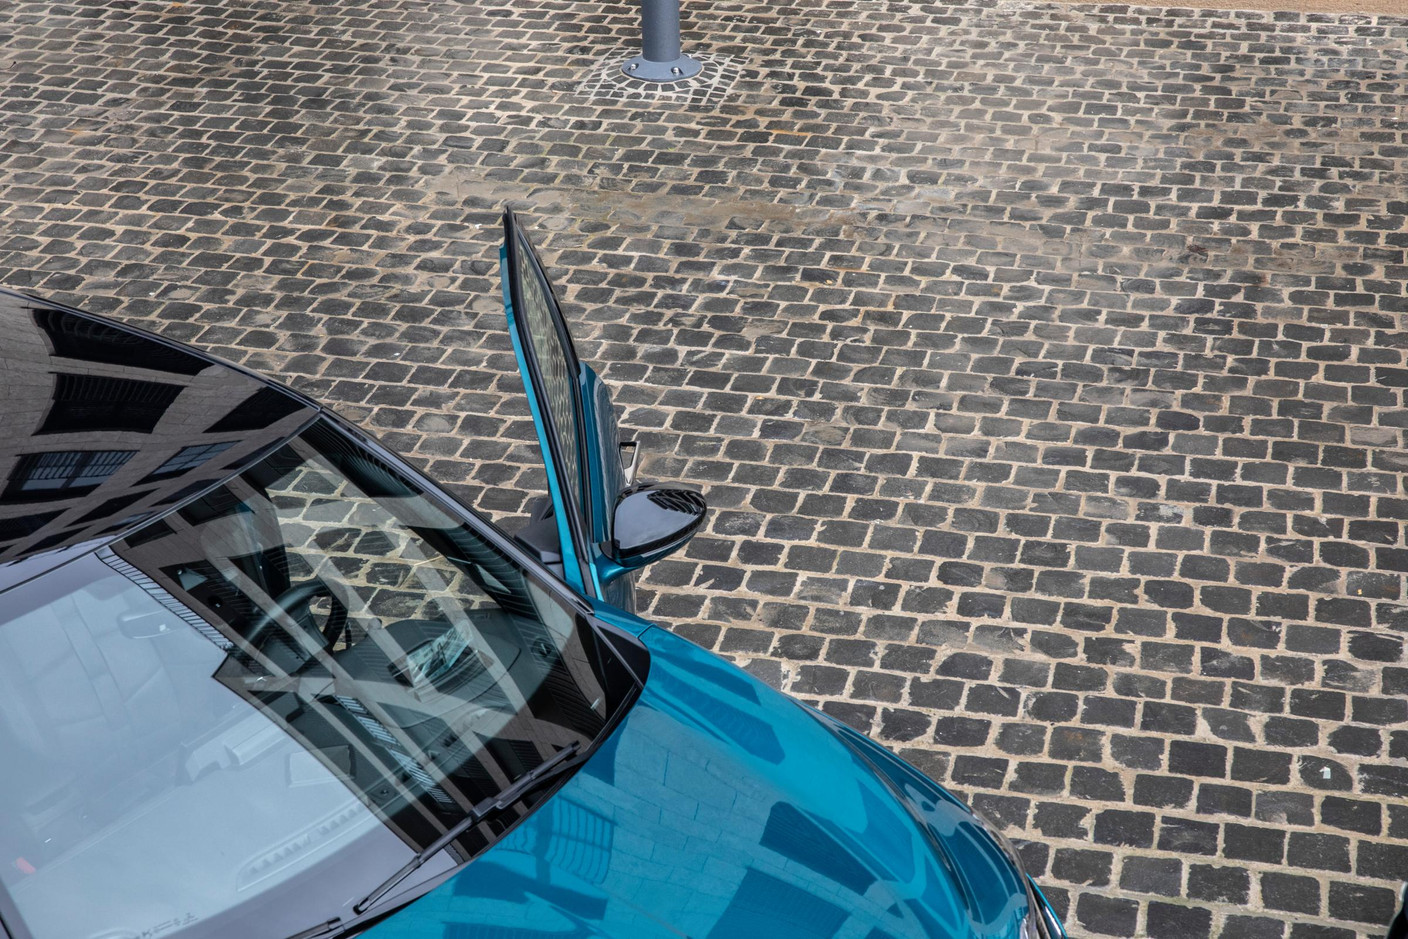 Ce petit DS 3 Crossback est plutôt réussi si on aime les voitures dont le design, tant extérieur qu’intérieur, a de la personnalité.  (Photo: Jan Hanrion / Maison Moderne)